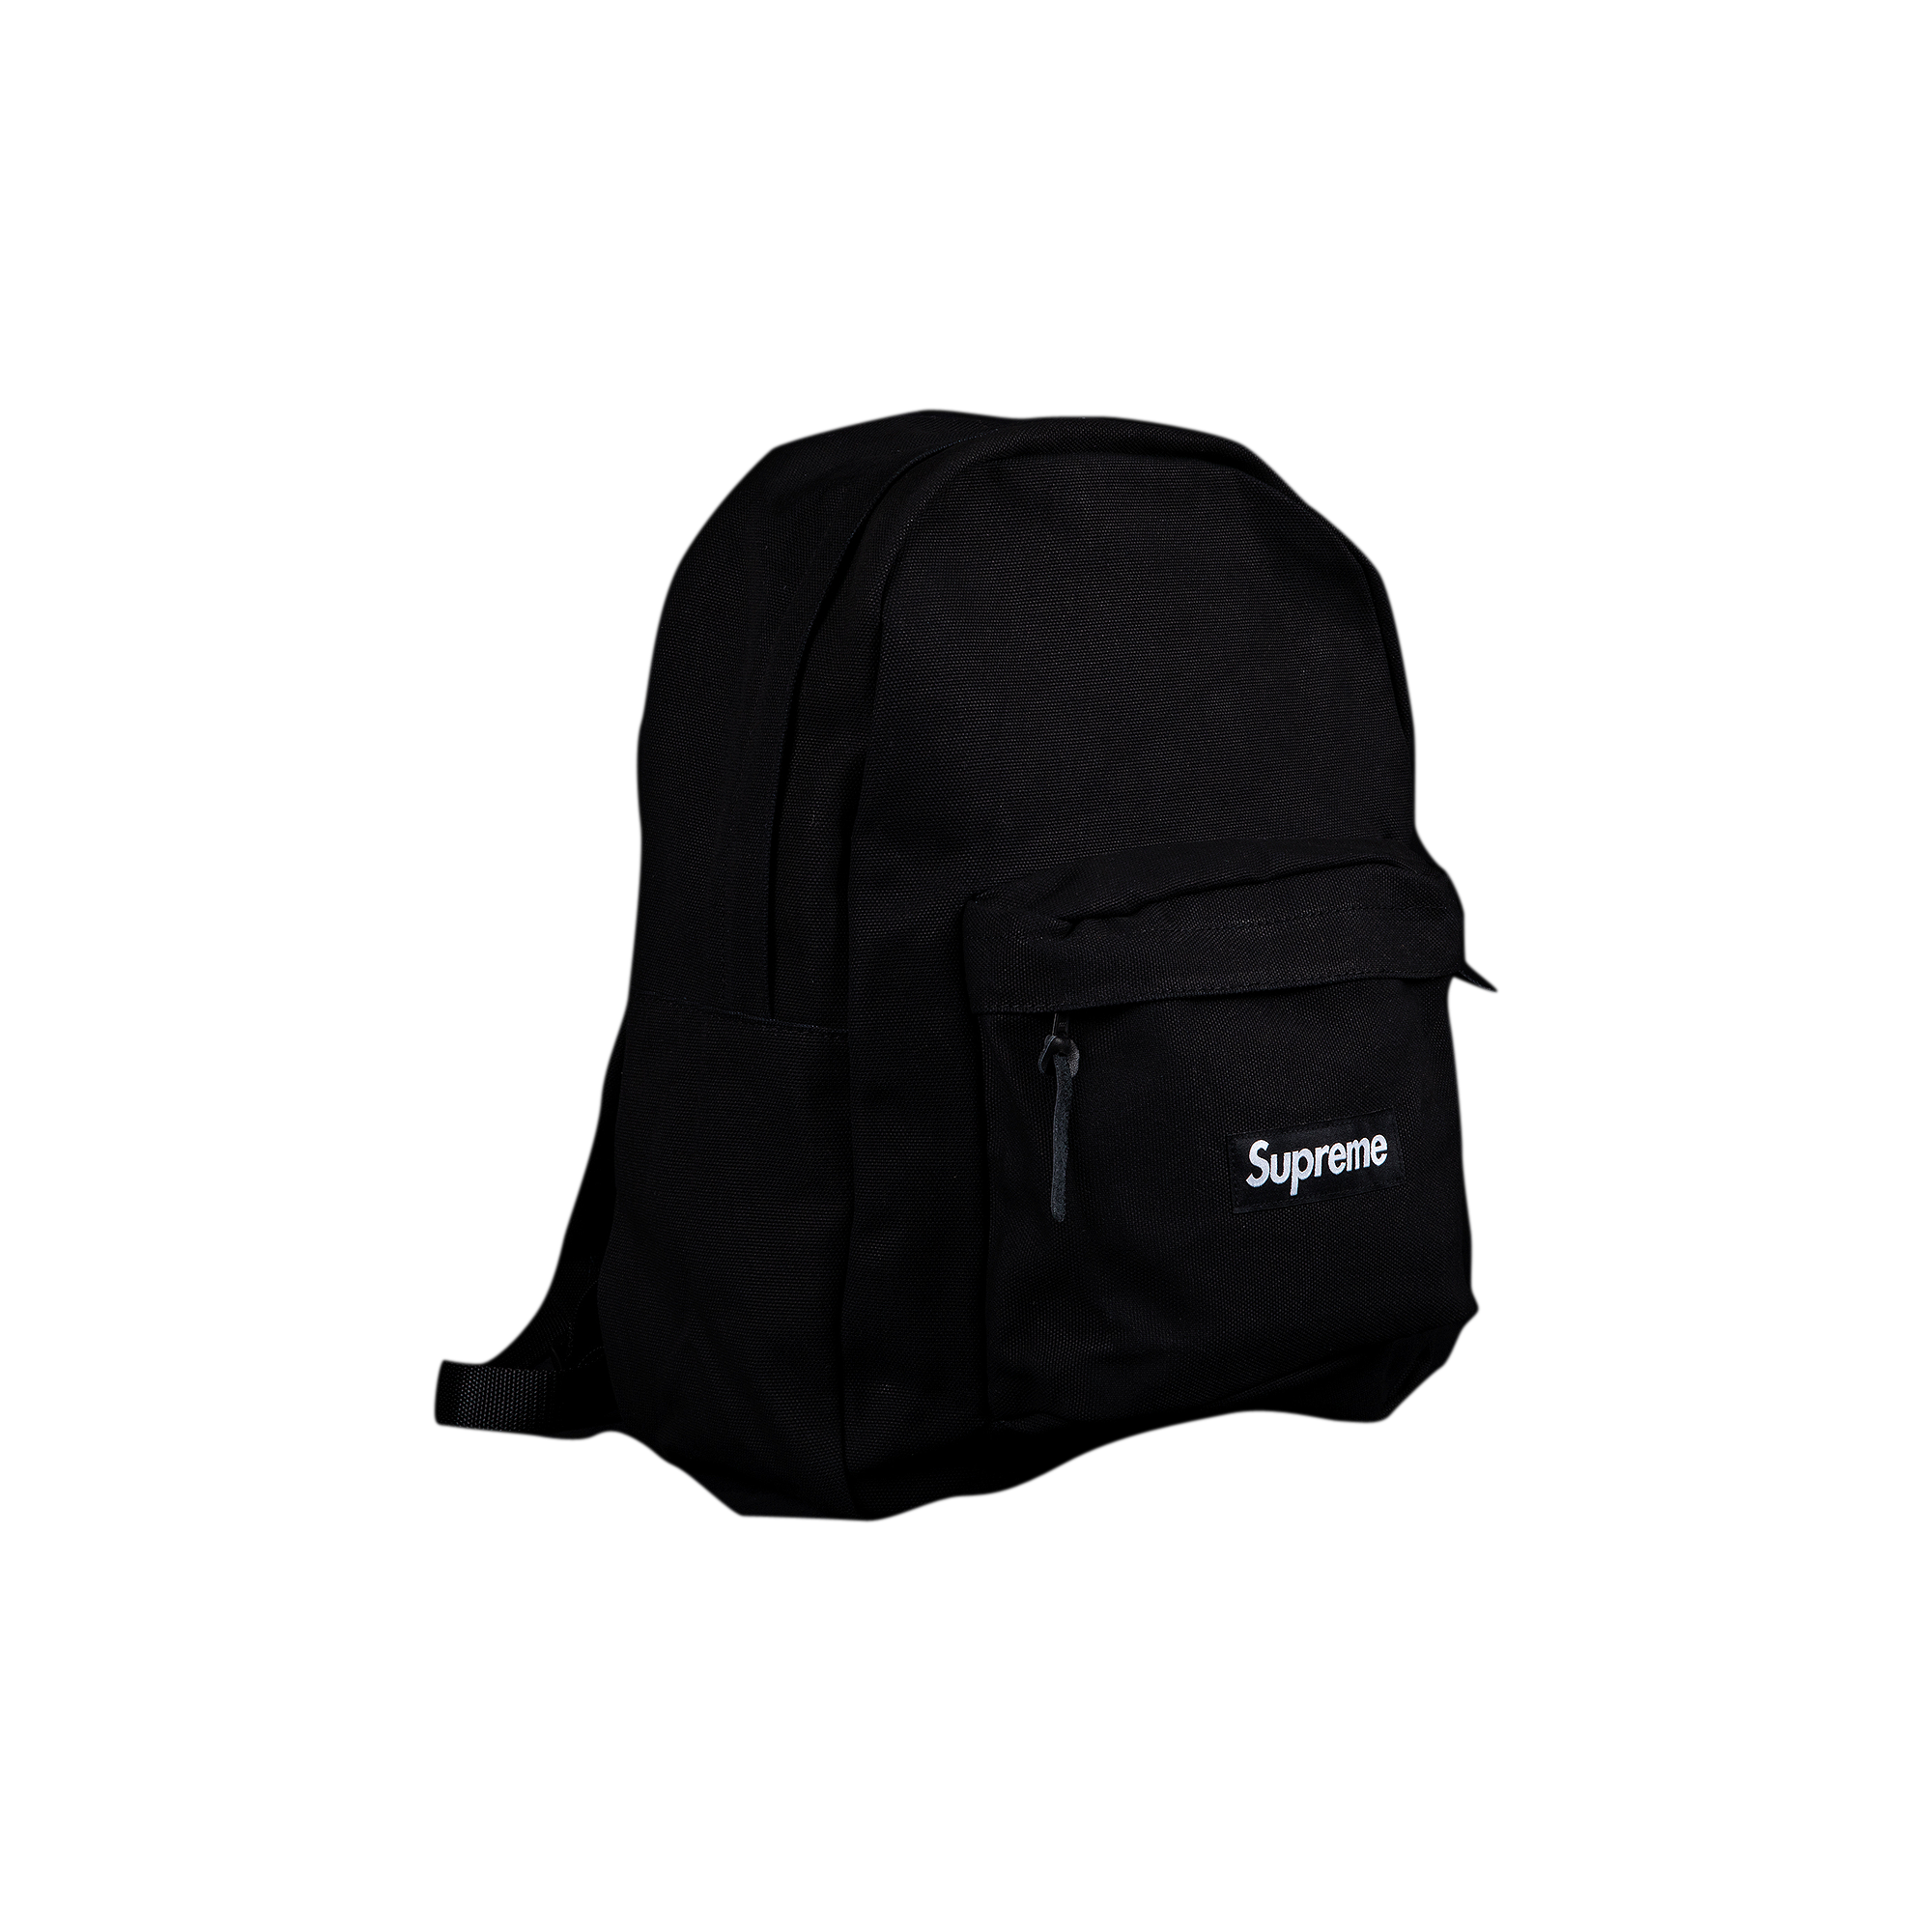 Supreme Canvas Backpack 'Black'